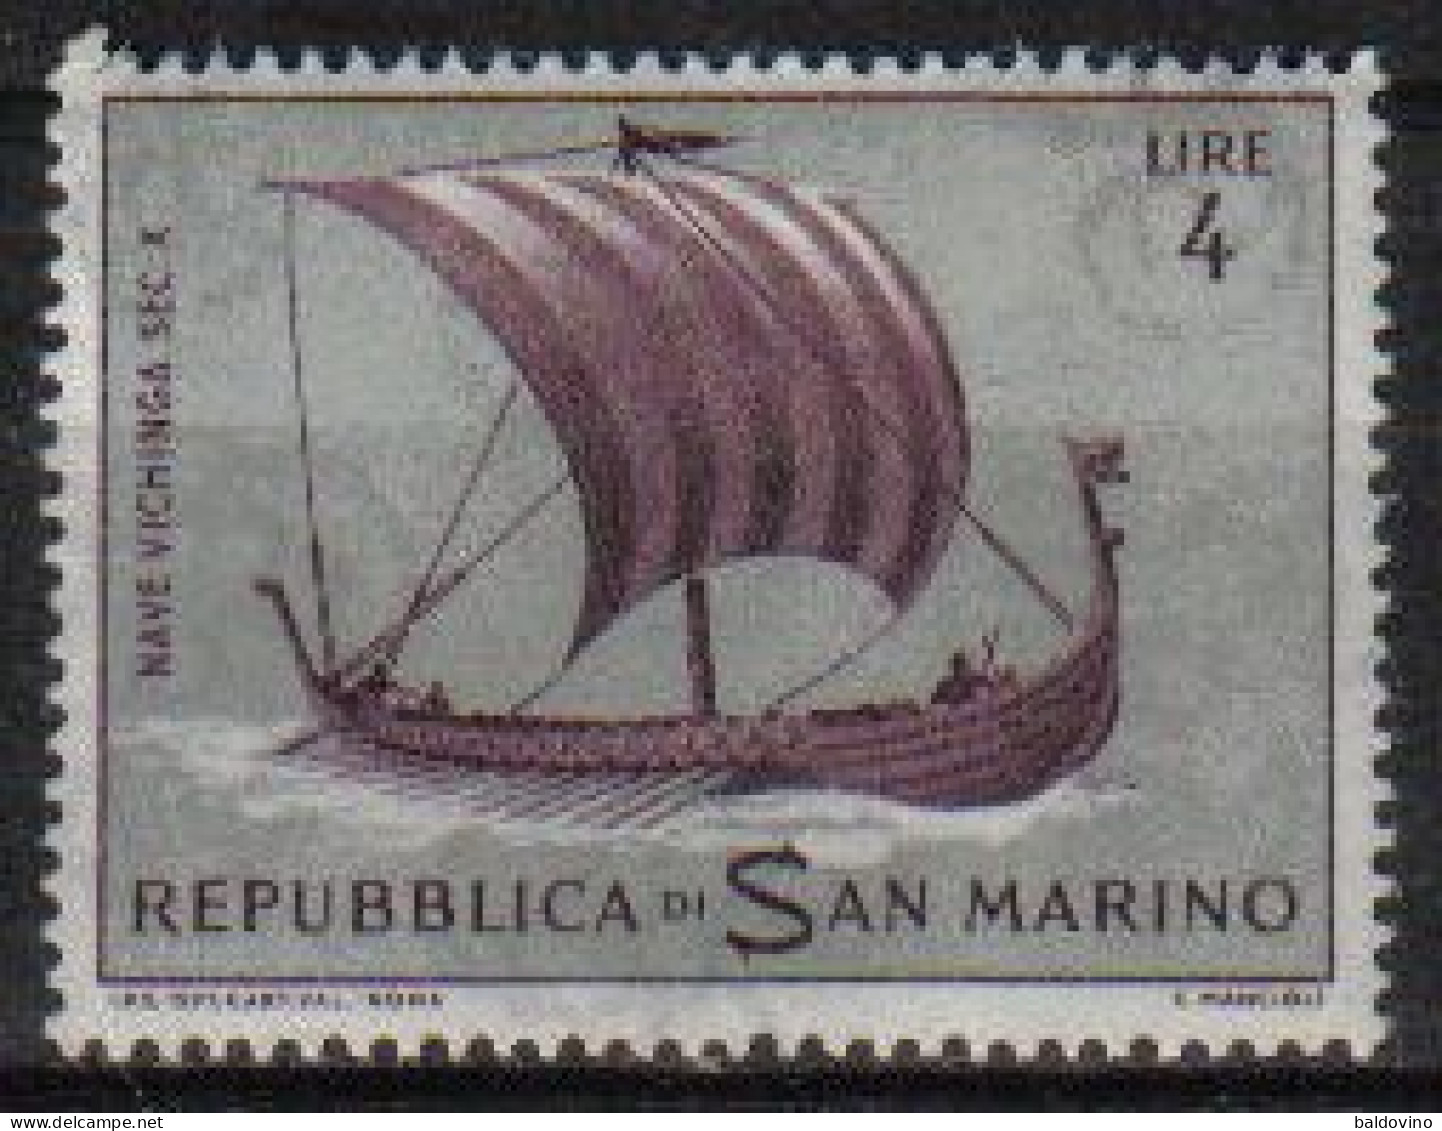 S. Marino 1957/1972 Lotto 34 esemplari nuovi (vedi descrizione).